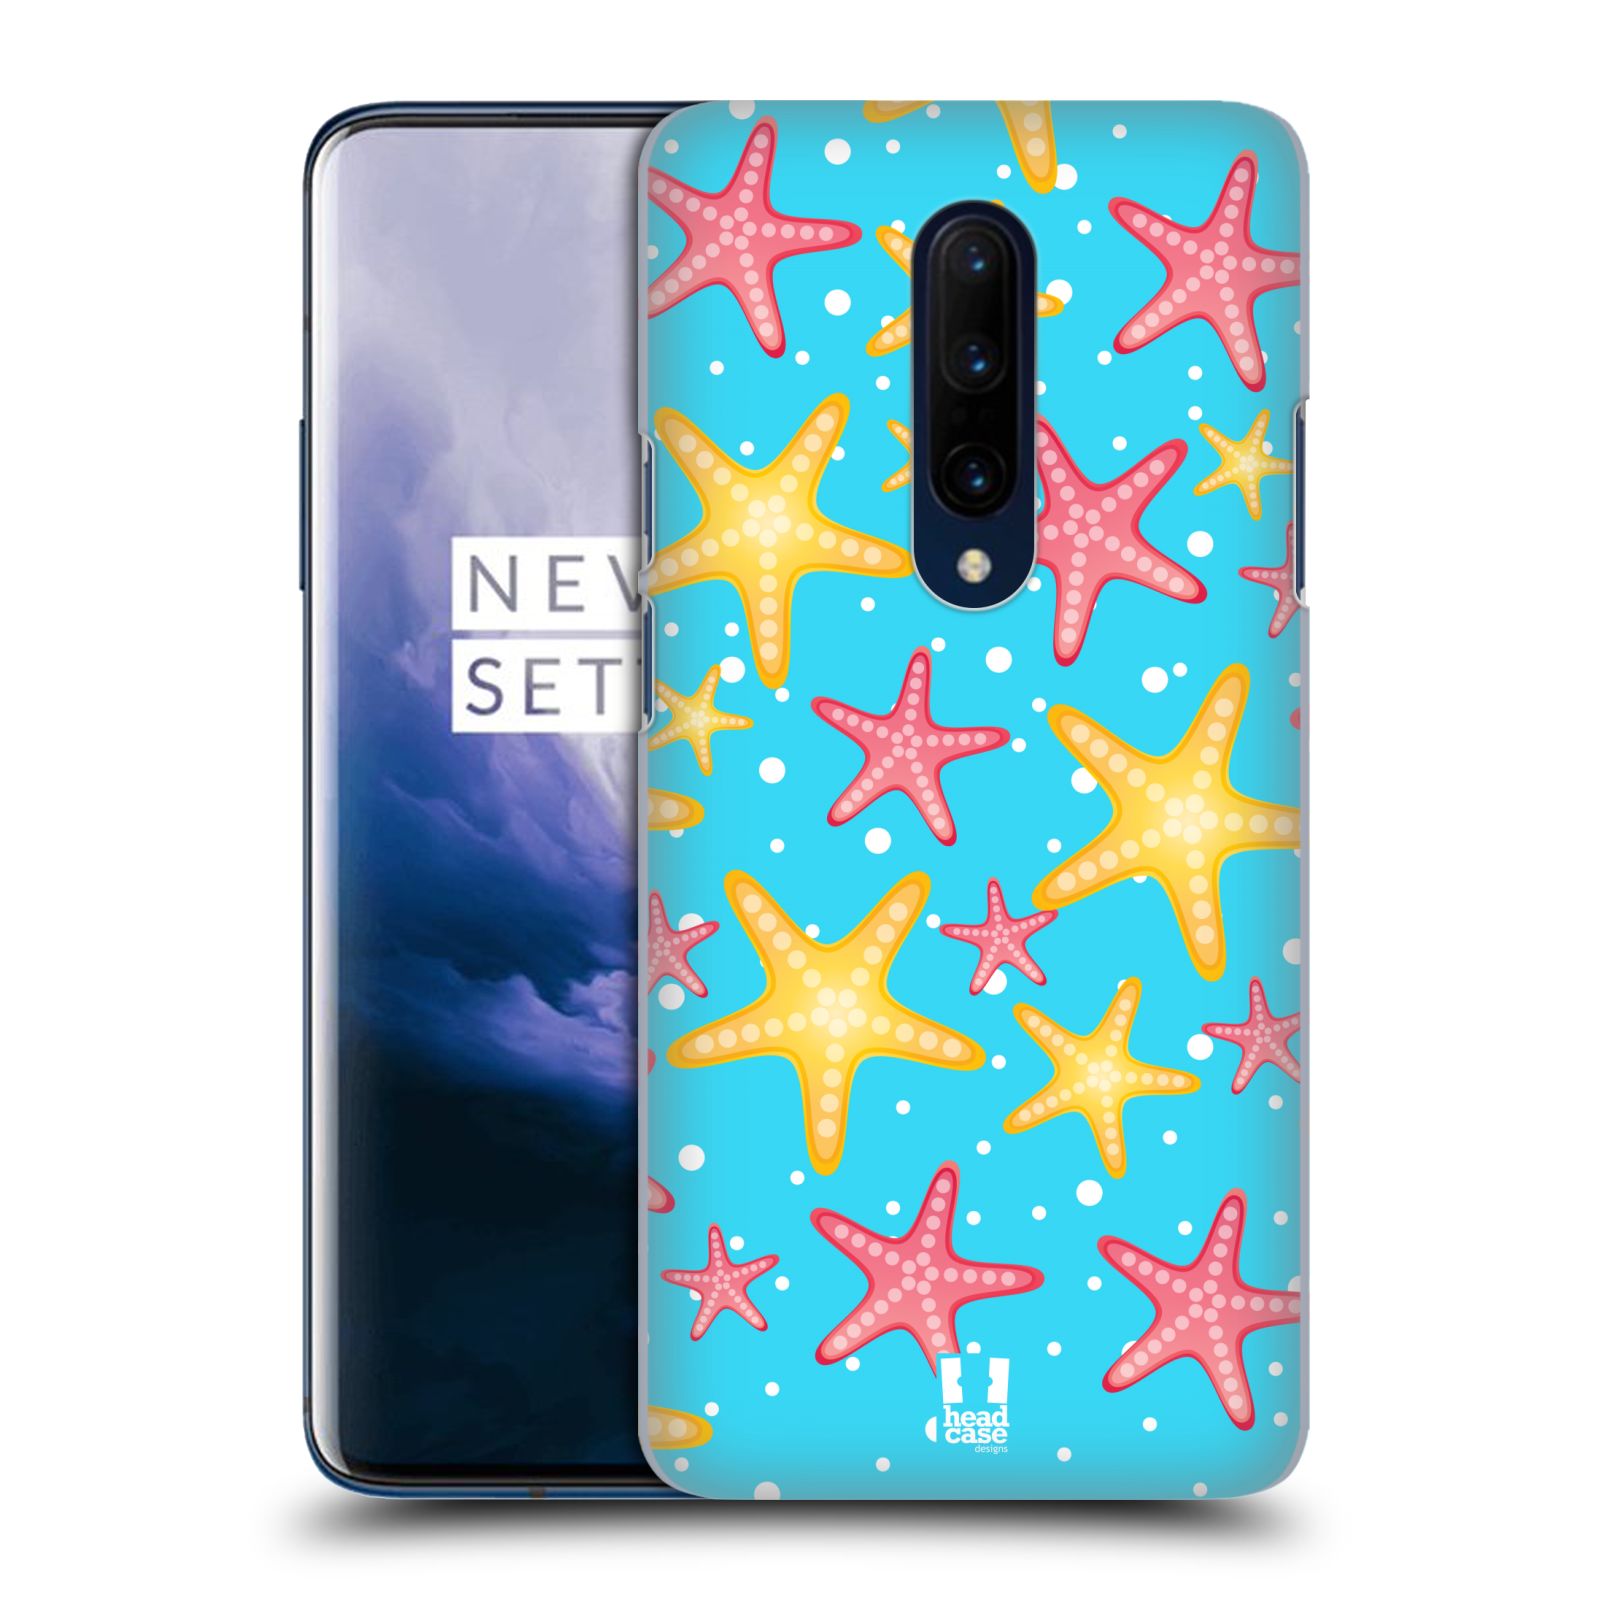 Zadní obal pro mobil OnePlus 7 PRO - HEAD CASE - kreslený mořský vzor hvězda